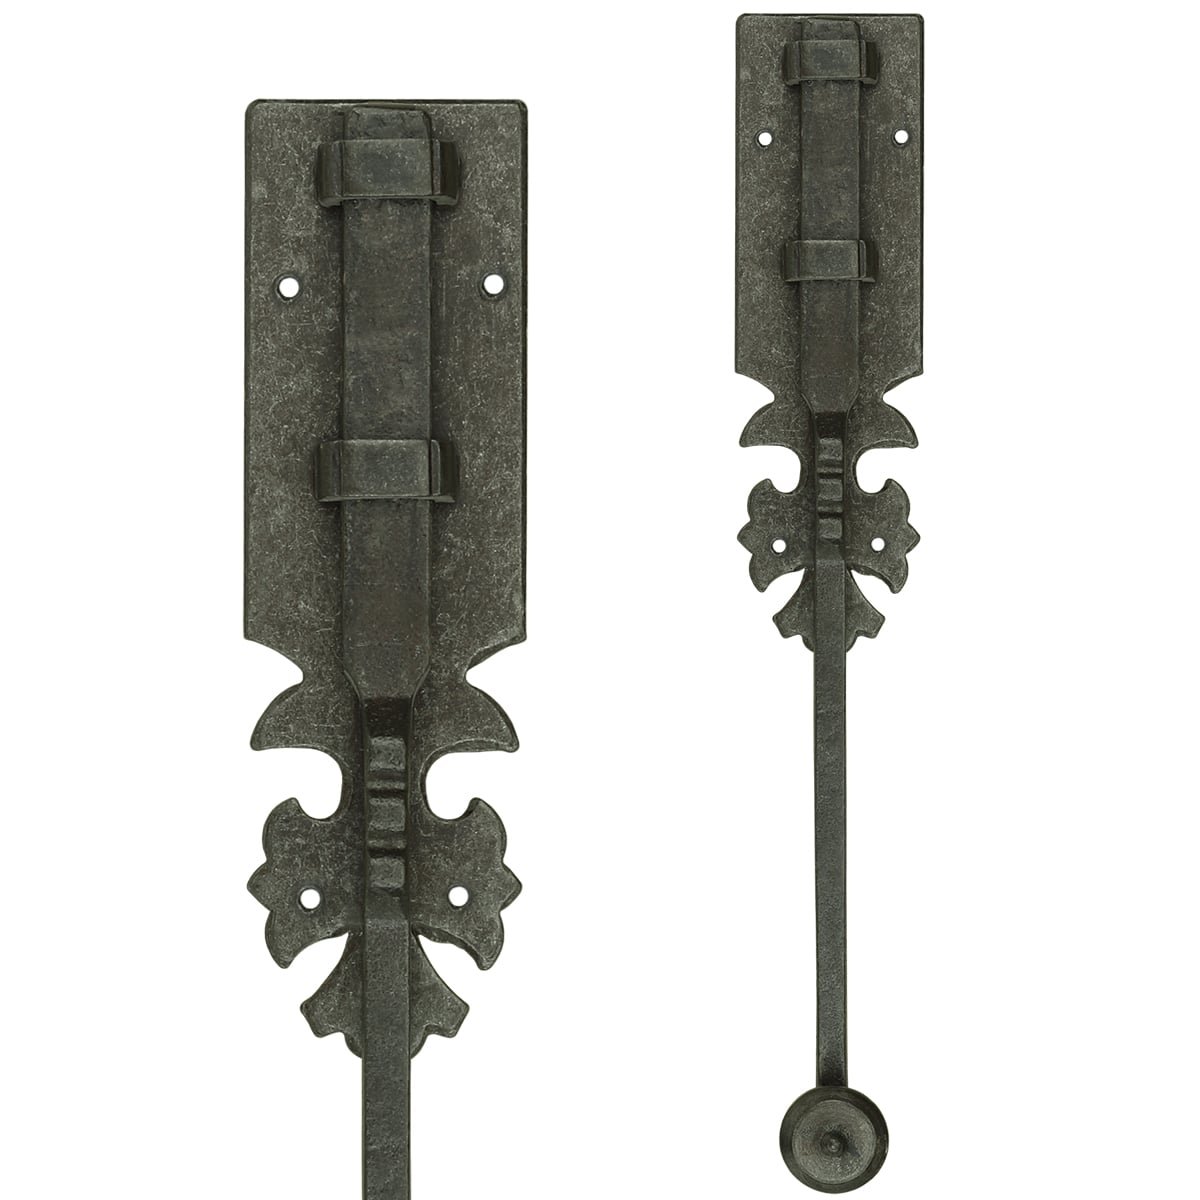 Türbeschläge Türschlösser Türriegel aufbau mit schlossplatte - 310 mm